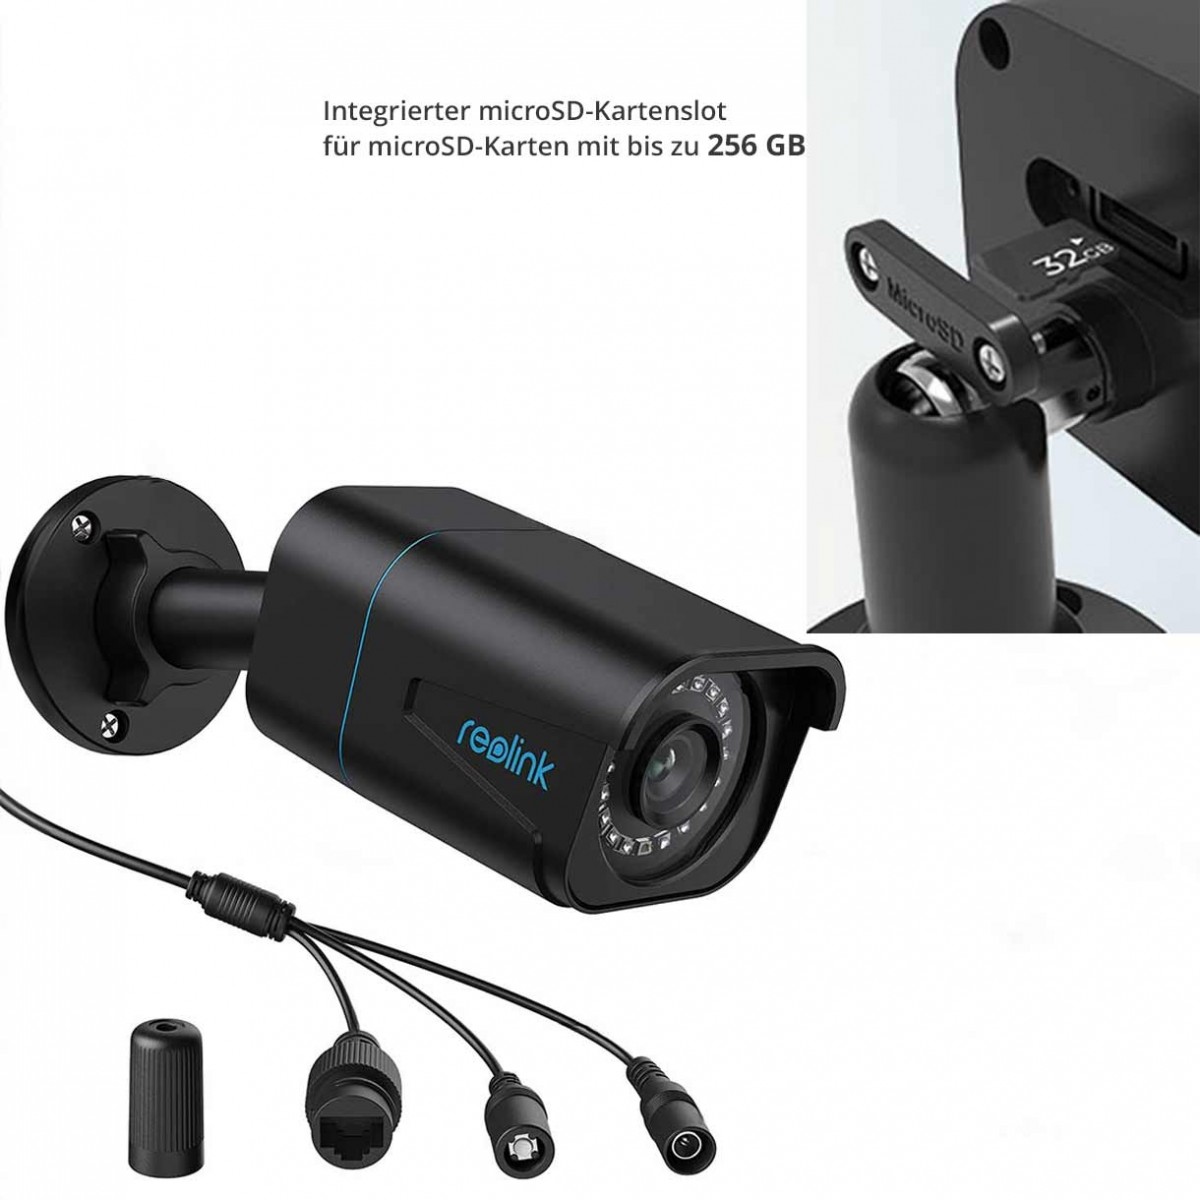 Reolink RLC-1010A 5K 10 MP IP PoE Überwachungskamera mit intelligenter  Personen- und Autoerkennung, Zeitraffer-Funktion, bis zu 30 m Nachtsicht  6975253986415